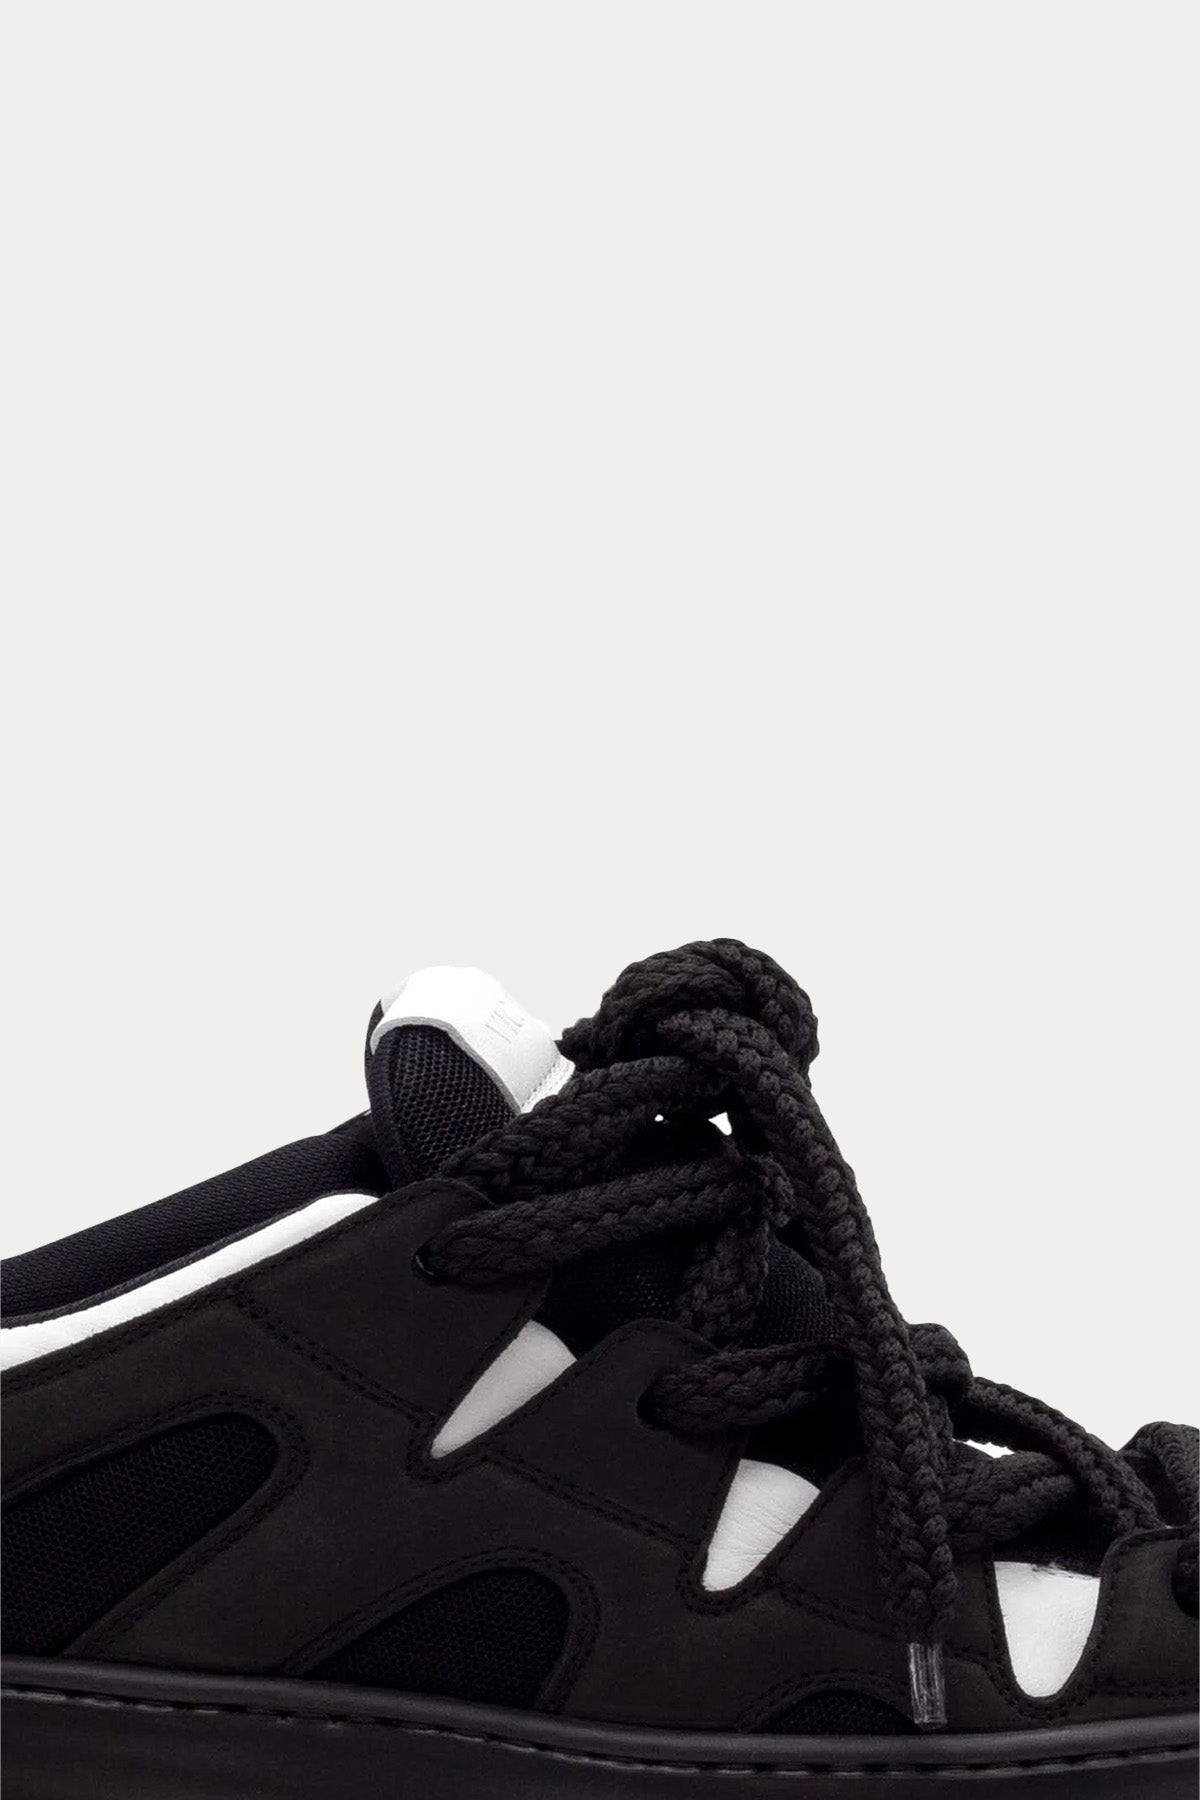 Vic Matie Kalın Bağcıklı Sneaker Ayakkabı-Libas Trendy Fashion Store